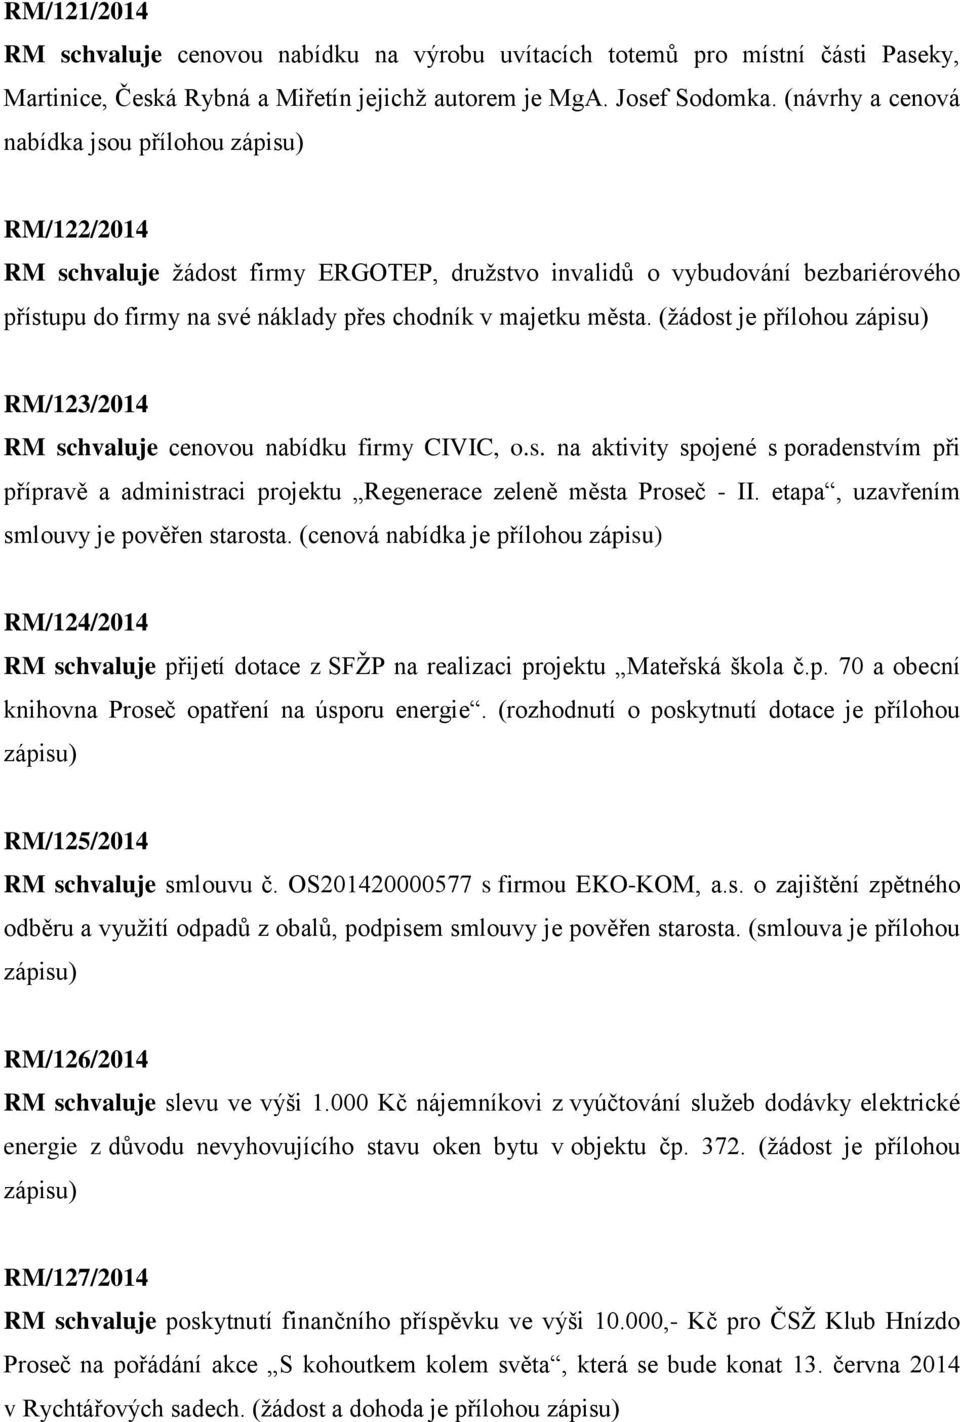 (žádost je přílohou RM/123/2014 RM schvaluje cenovou nabídku firmy CIVIC, o.s. na aktivity spojené s poradenstvím při přípravě a administraci projektu Regenerace zeleně města Proseč - II.